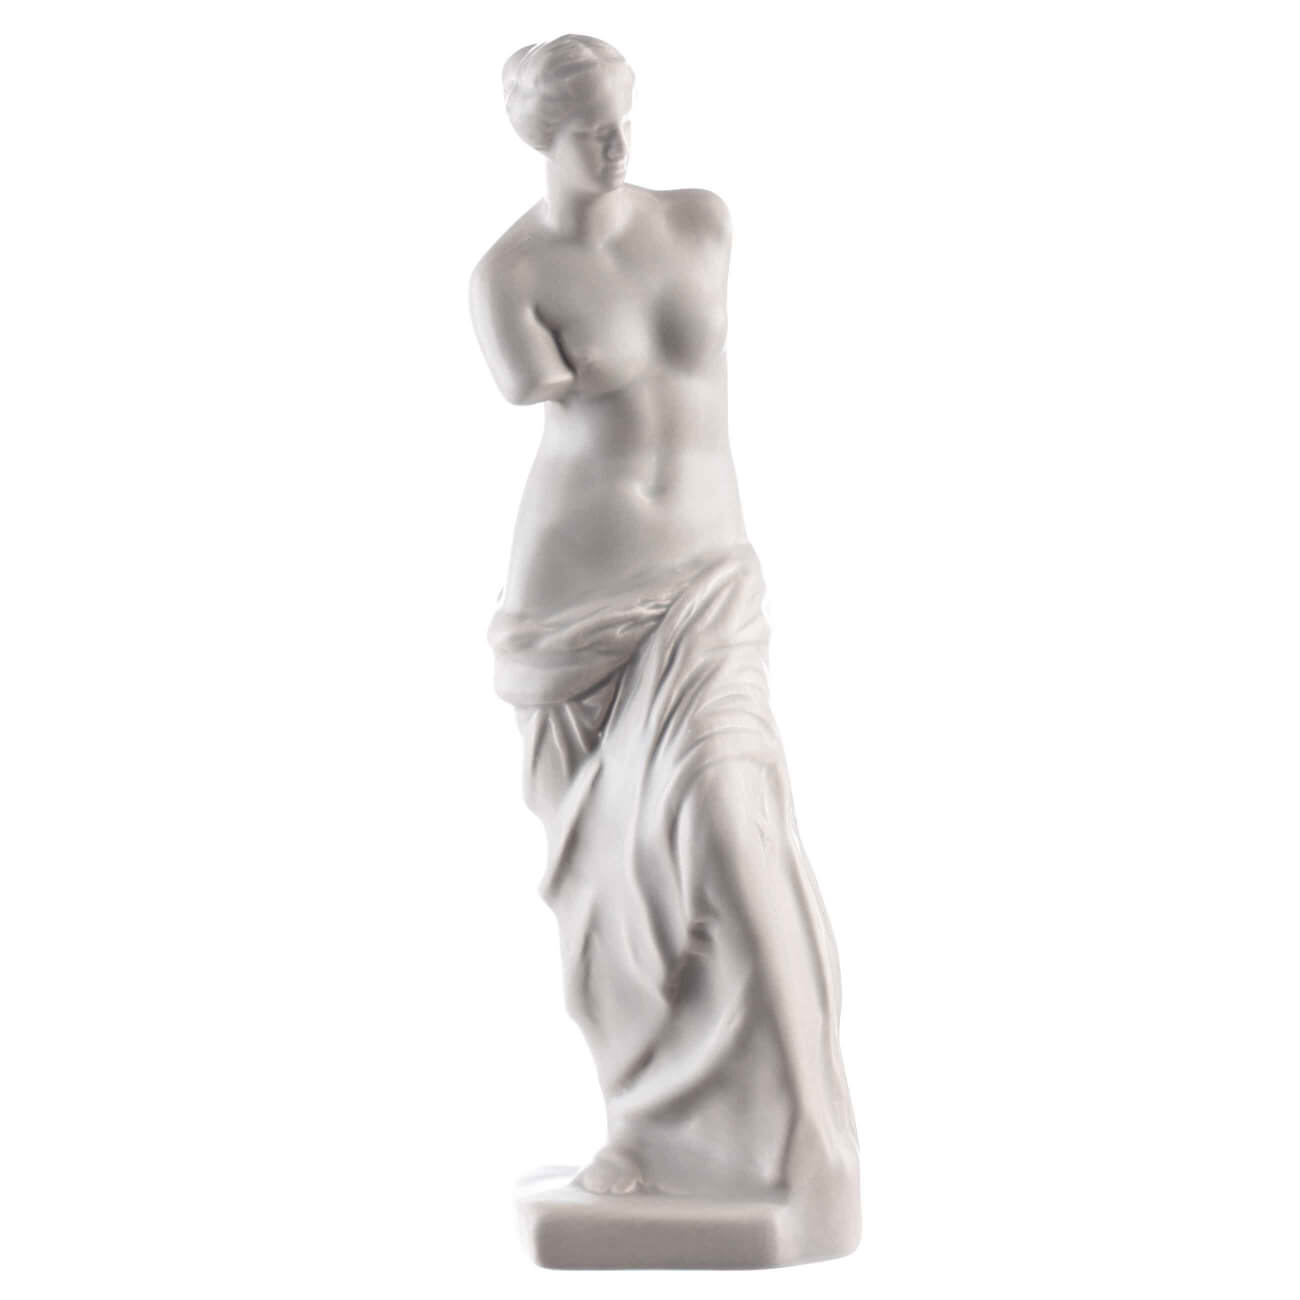 Статуэтка, 26 см, керамика, бежево-серая, Венера, Venus статуэтка ананас бежево золотая керамика 24 см